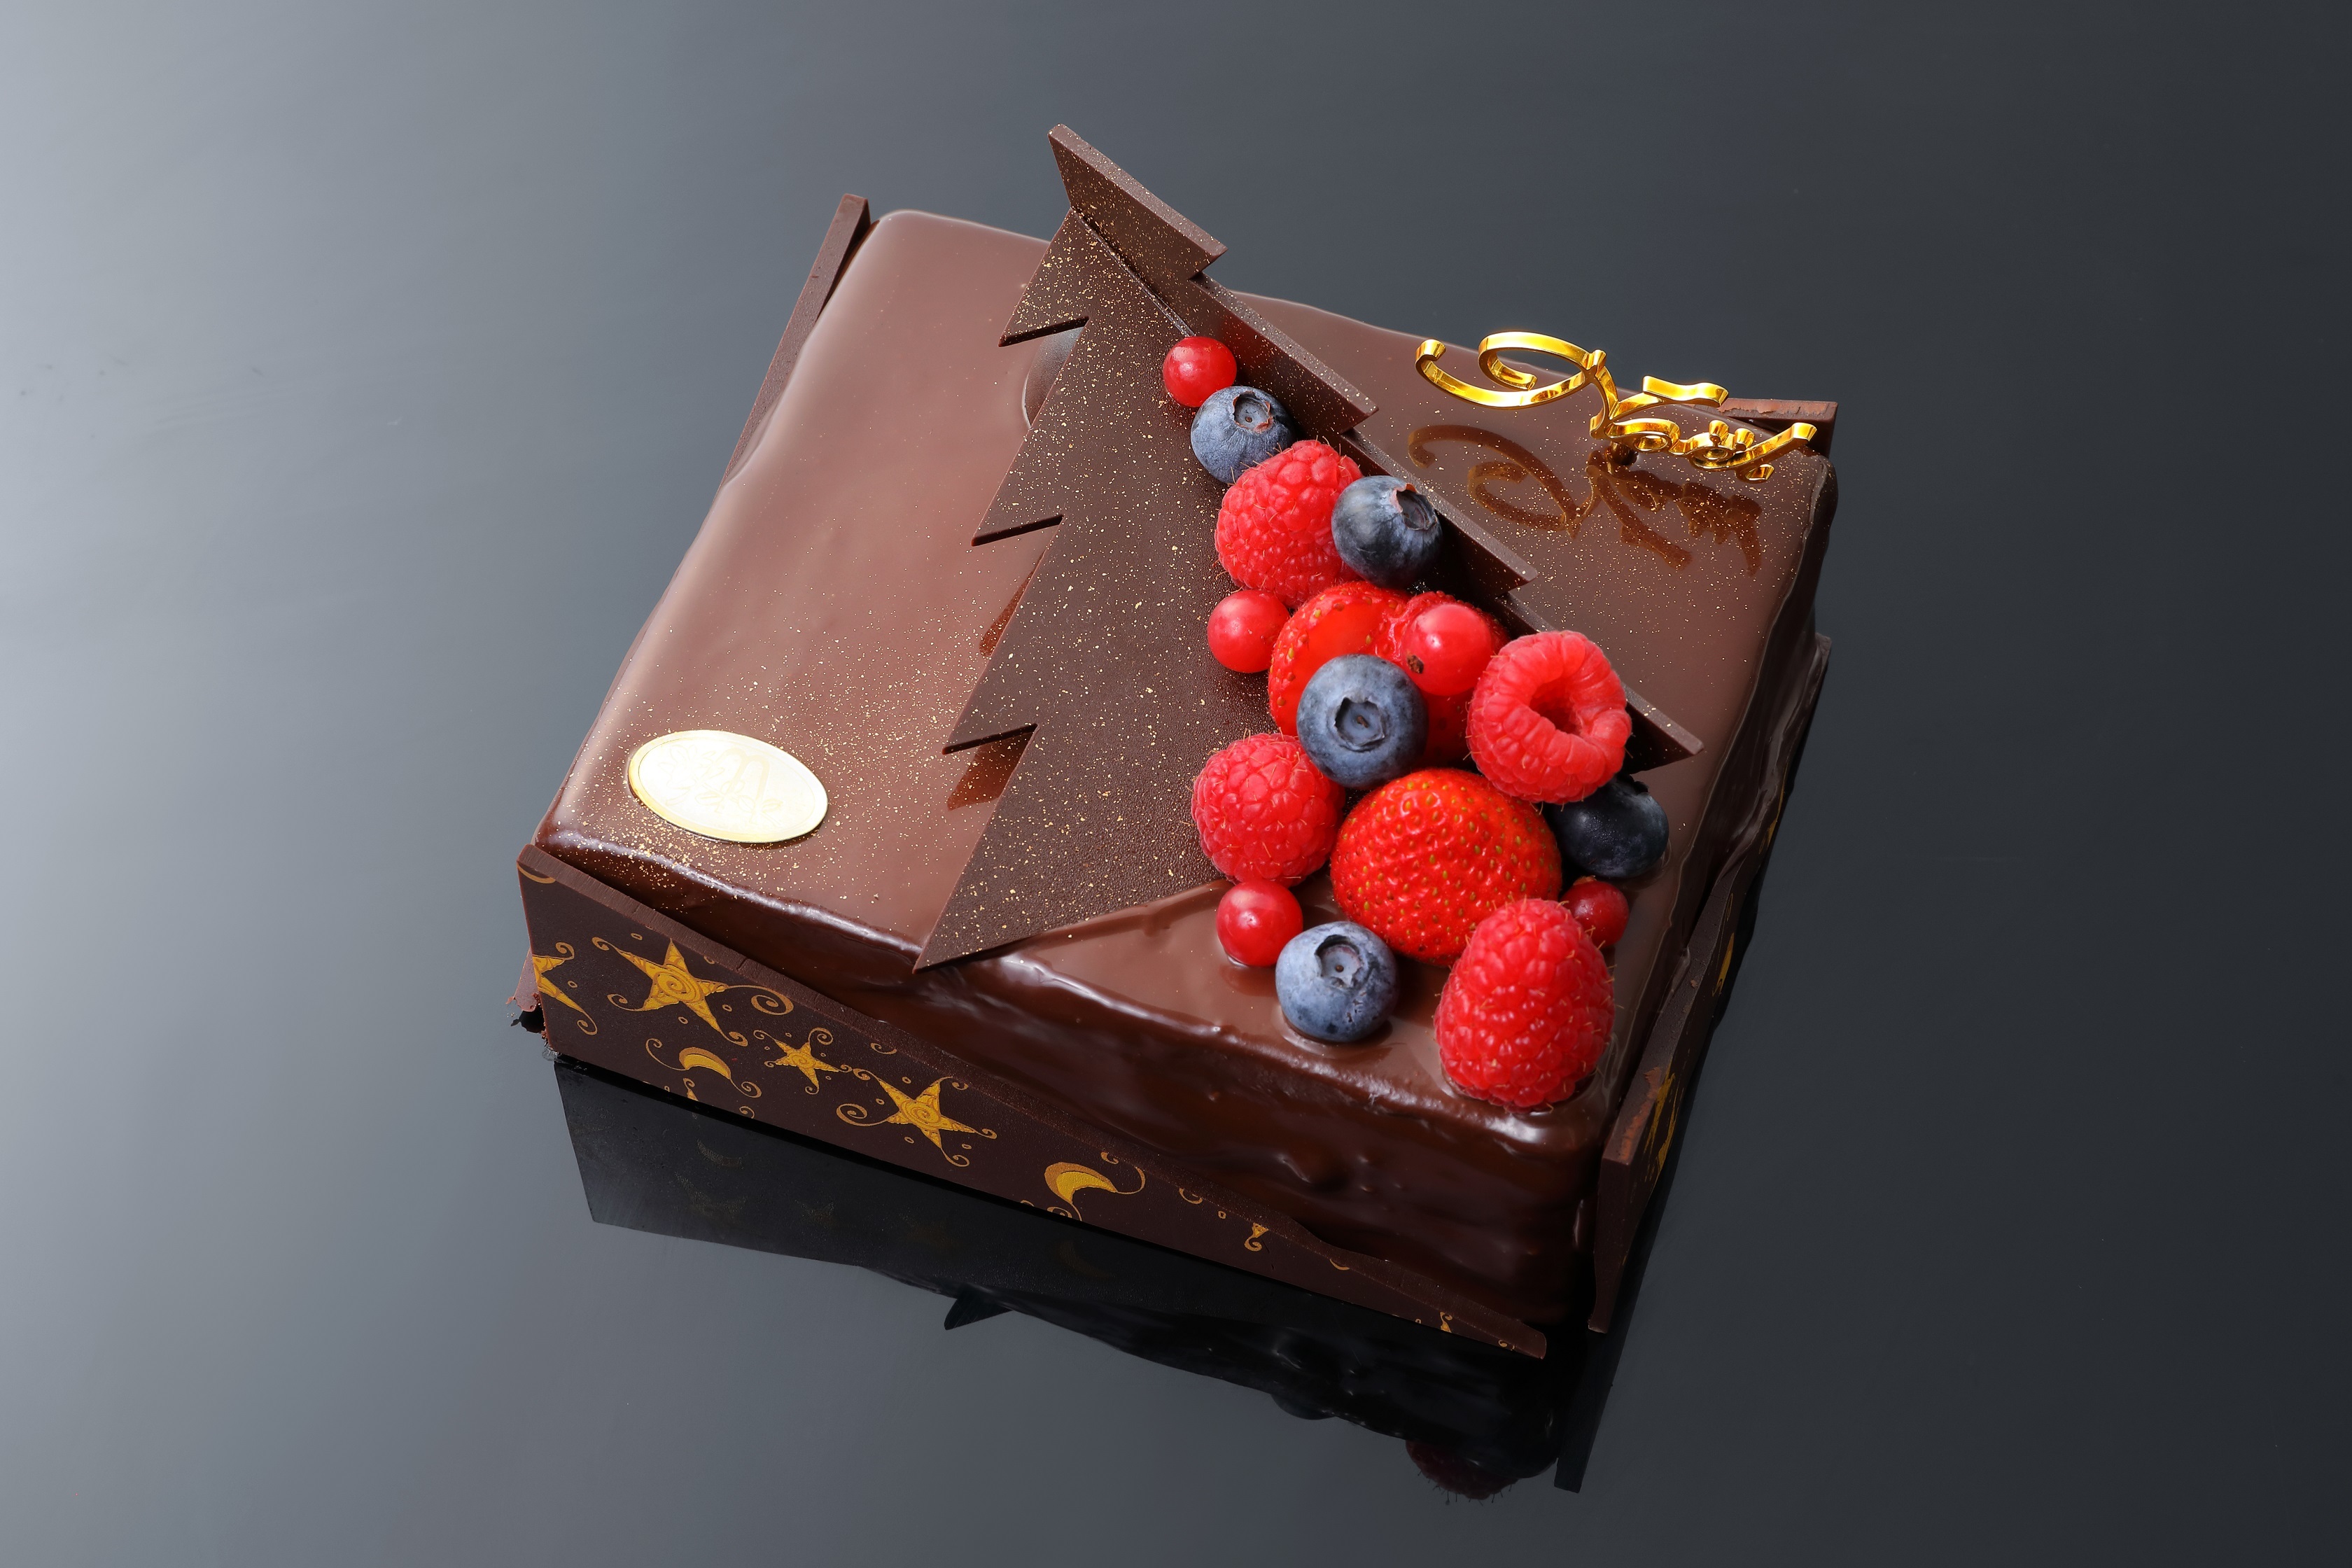 札幌のチョコレート専門店 ショコラティエ マサール のクリスマスケーキ予約開始 オンライン予約で10月中は10 割引 21年10月4日 エキサイトニュース